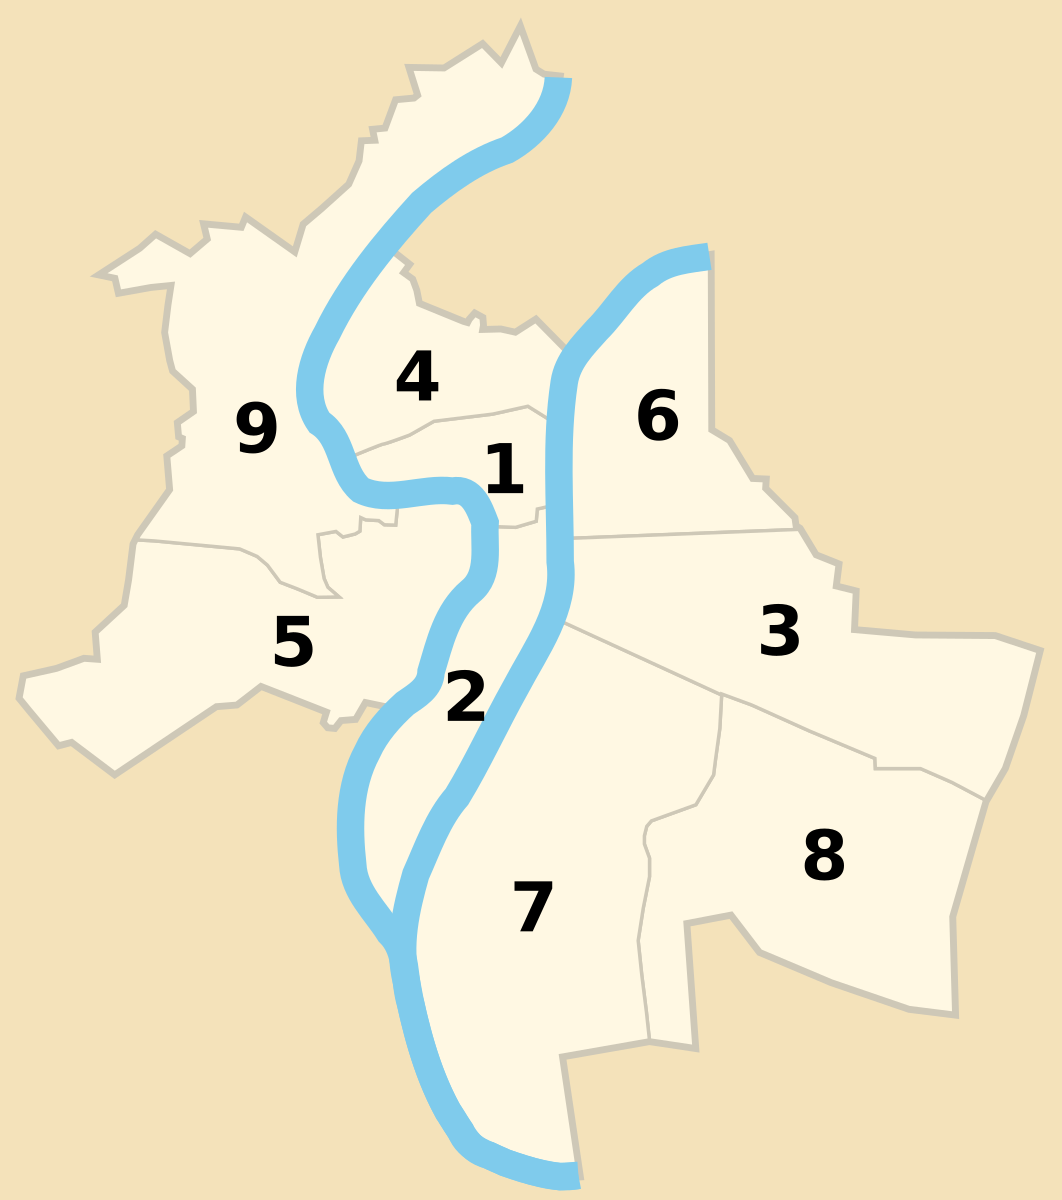 Municipal arrondissements of France